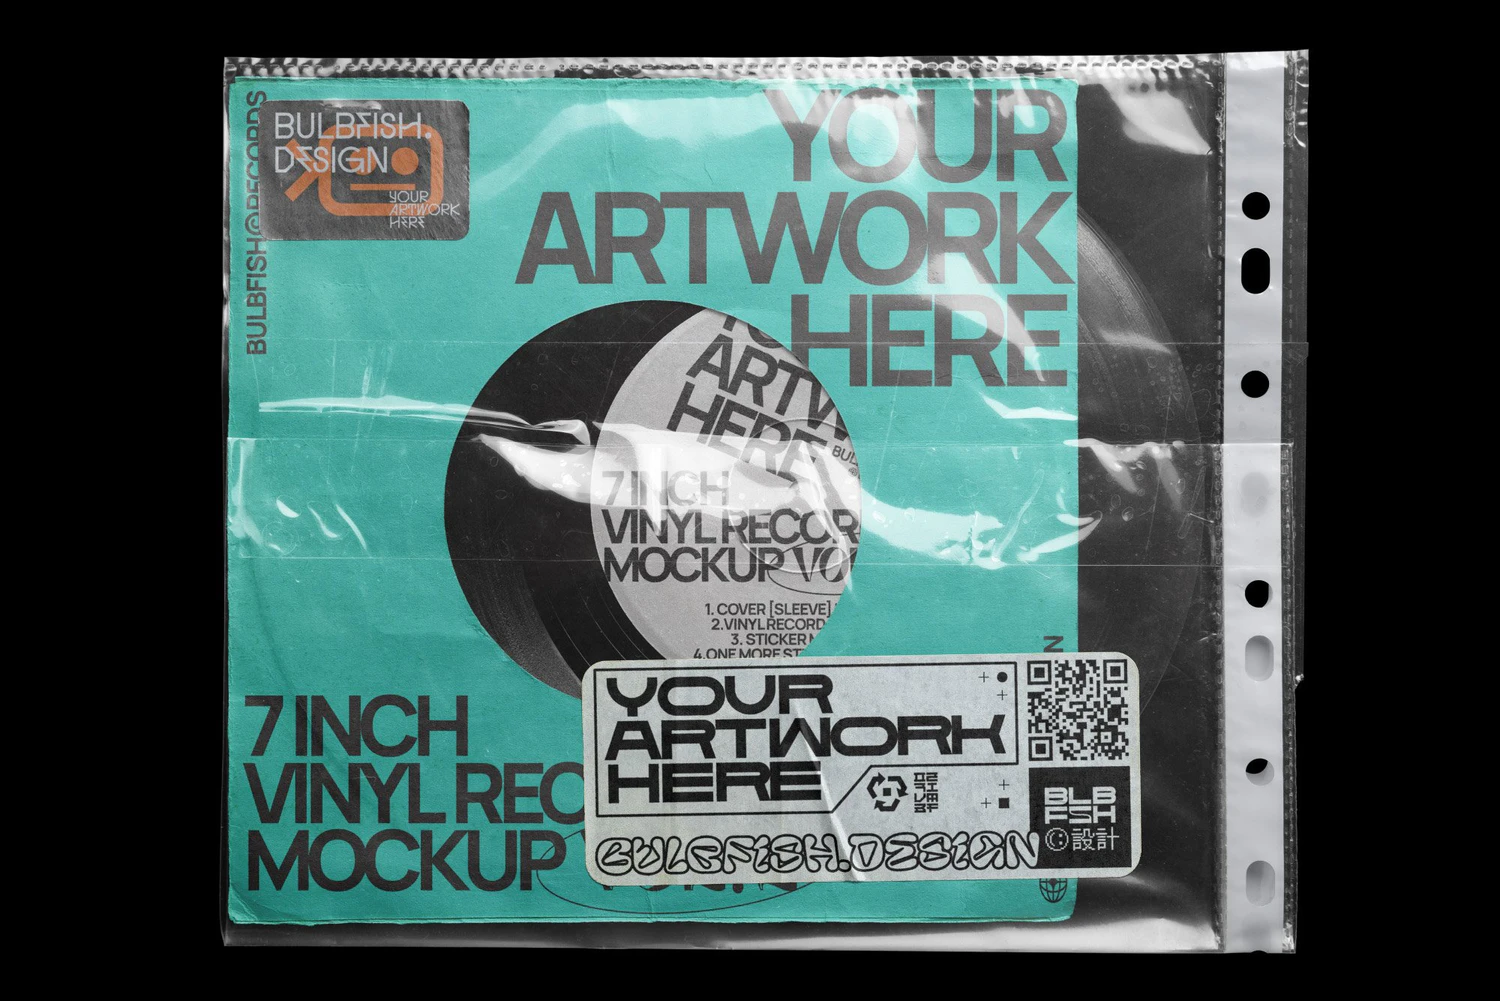 2711 潮流复古做旧嘻哈黑胶唱片电音专辑cd包装盒封面设计展示贴图ps样机模板 7 Inch Vinyl Record – Mockups Bundle